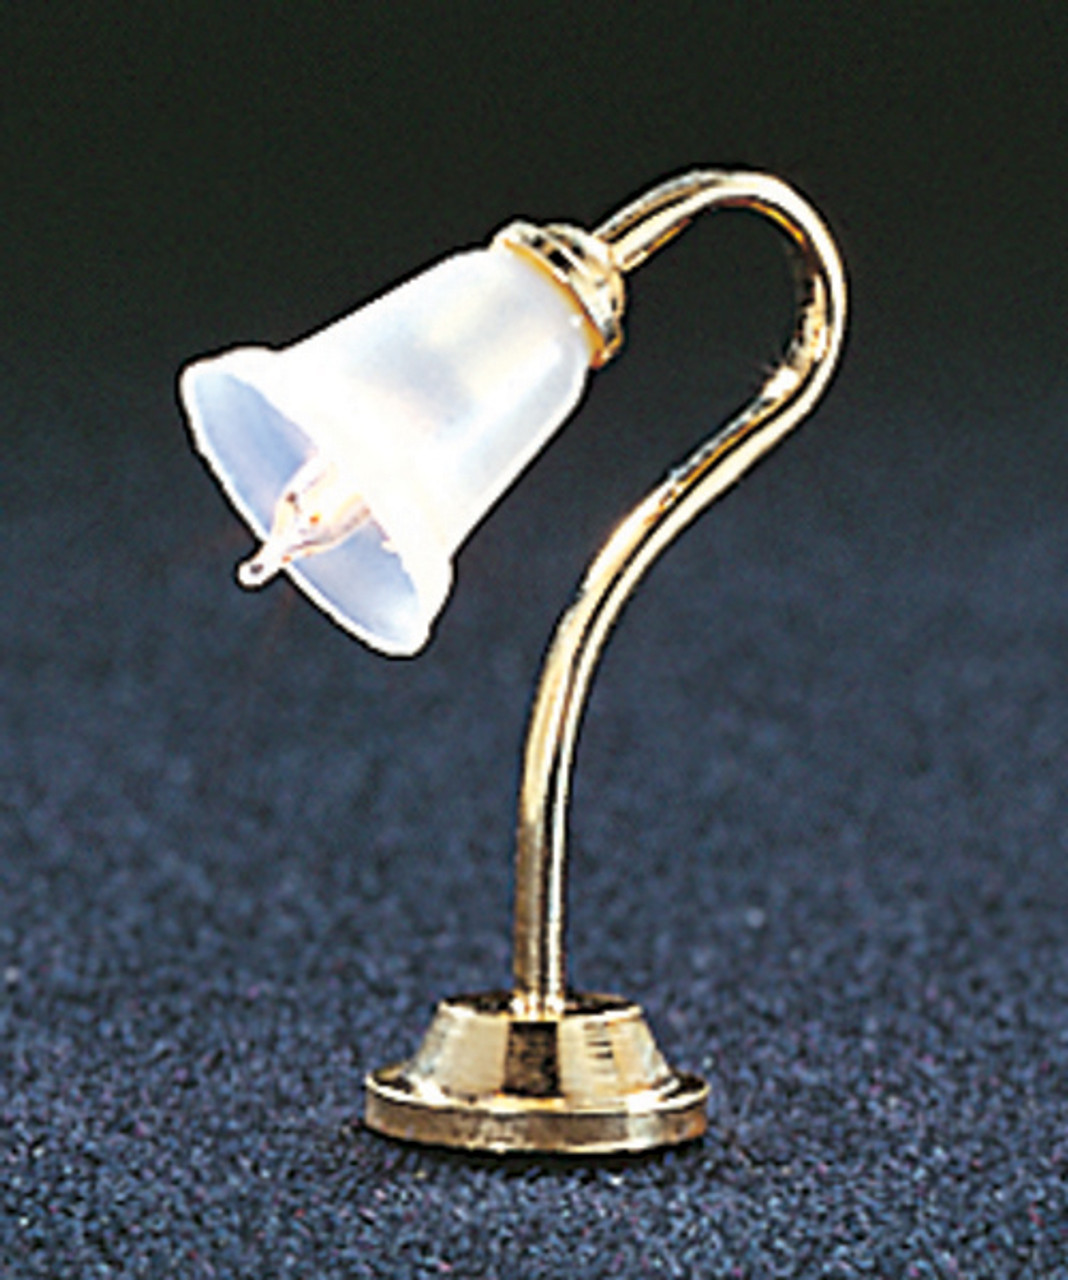 Dollhouse City - Dollhouse Miniatures Tulip Desk Lamp